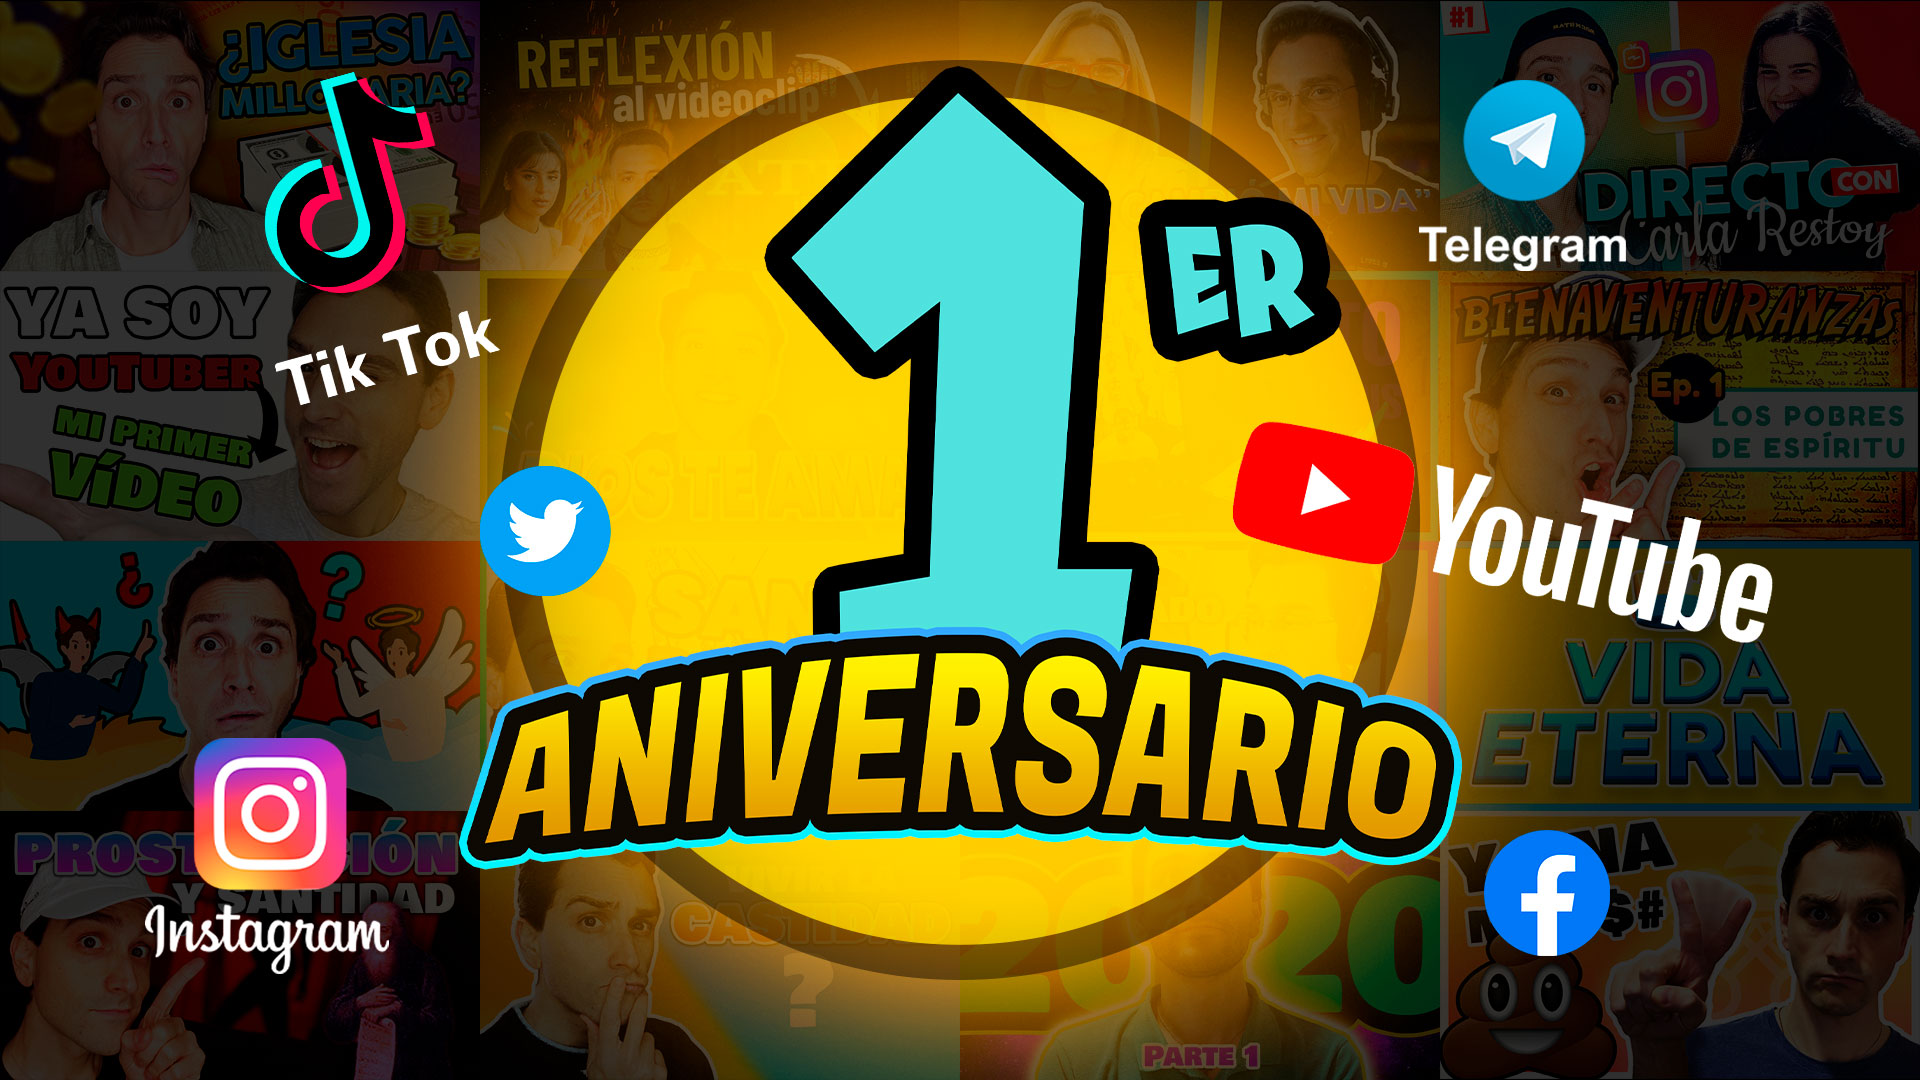 Aniversario de Enriquisimo Tv en Youtube. Enriquísimo Tv canal católico de YouTube y Tik Tok. Enrique Vidal Flores